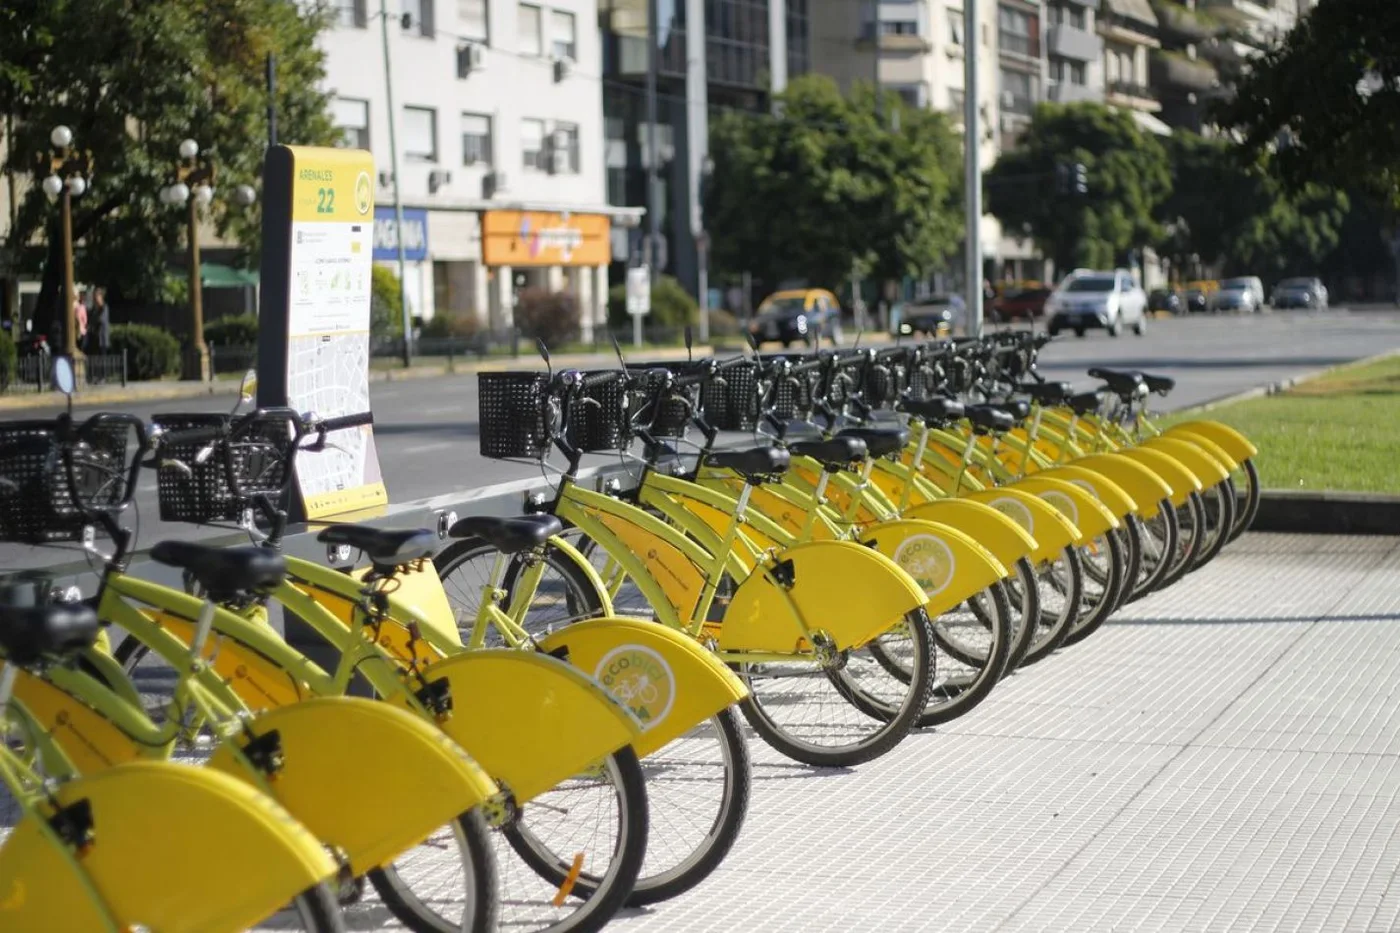 Von der Thusen: ”La bicicleta debe ser un sistema de transporte urbano”